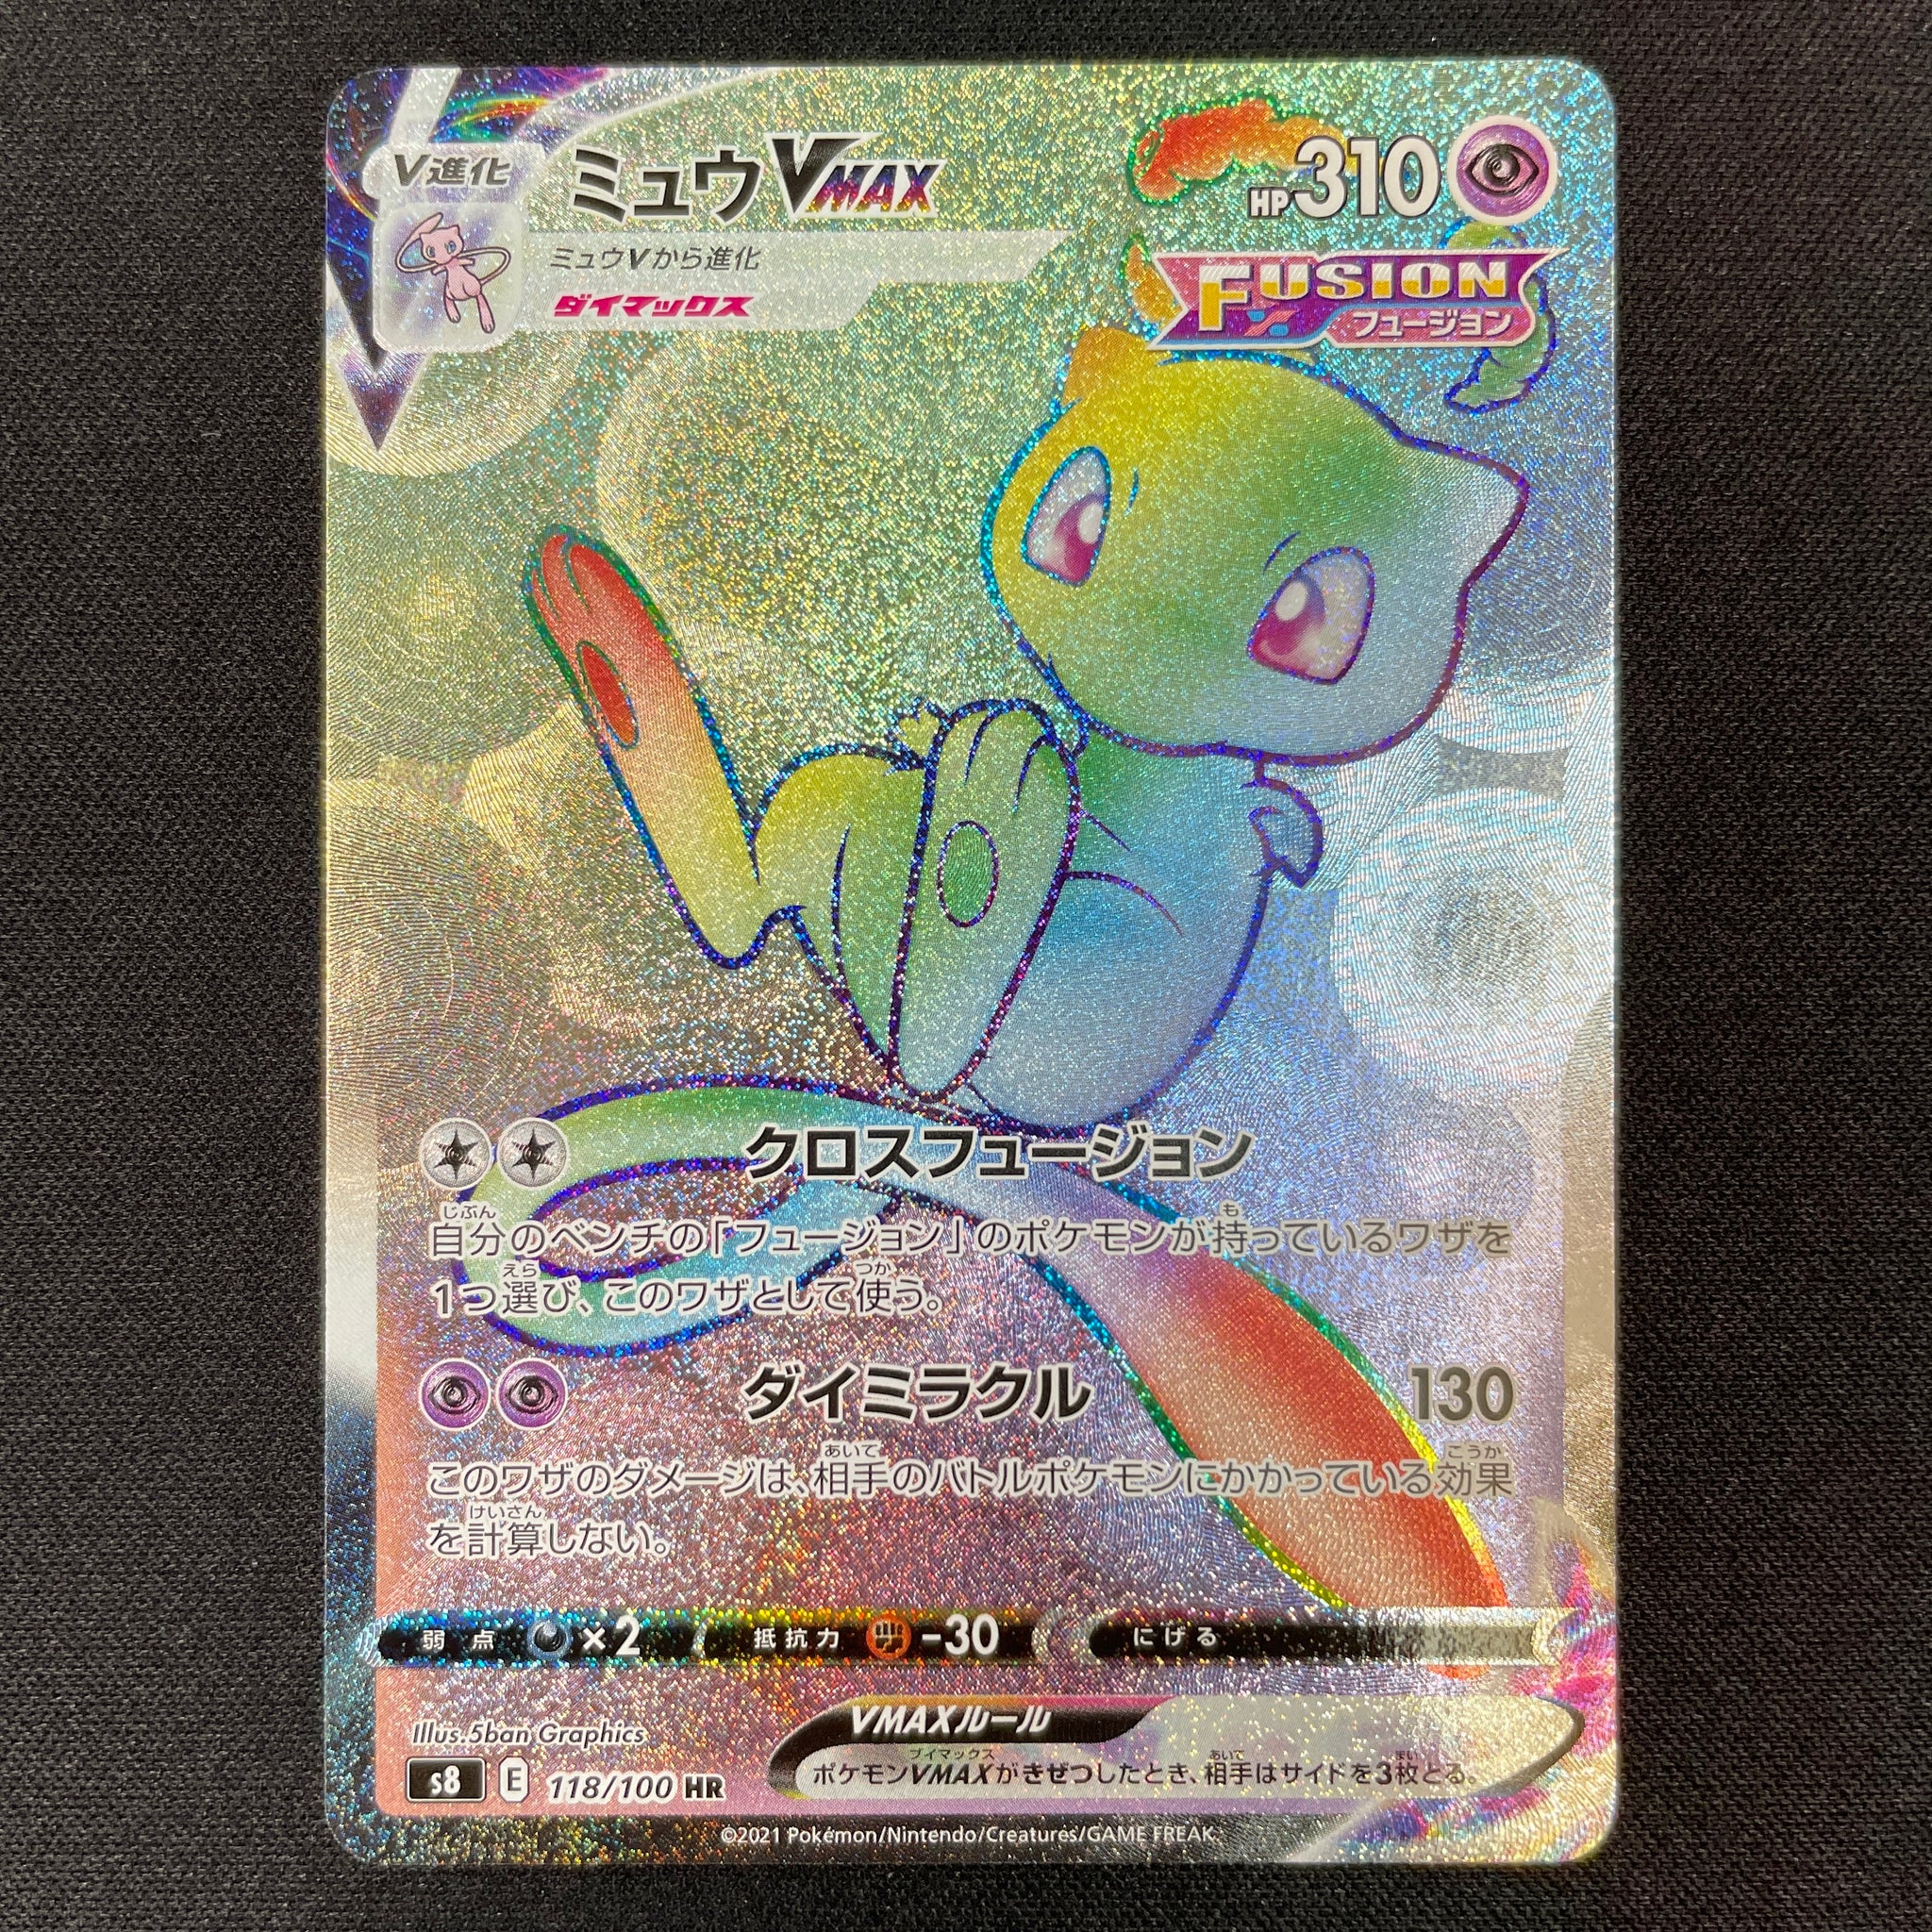 Mew VMAX - PSA Graded Pokemon Cards - Pokemon